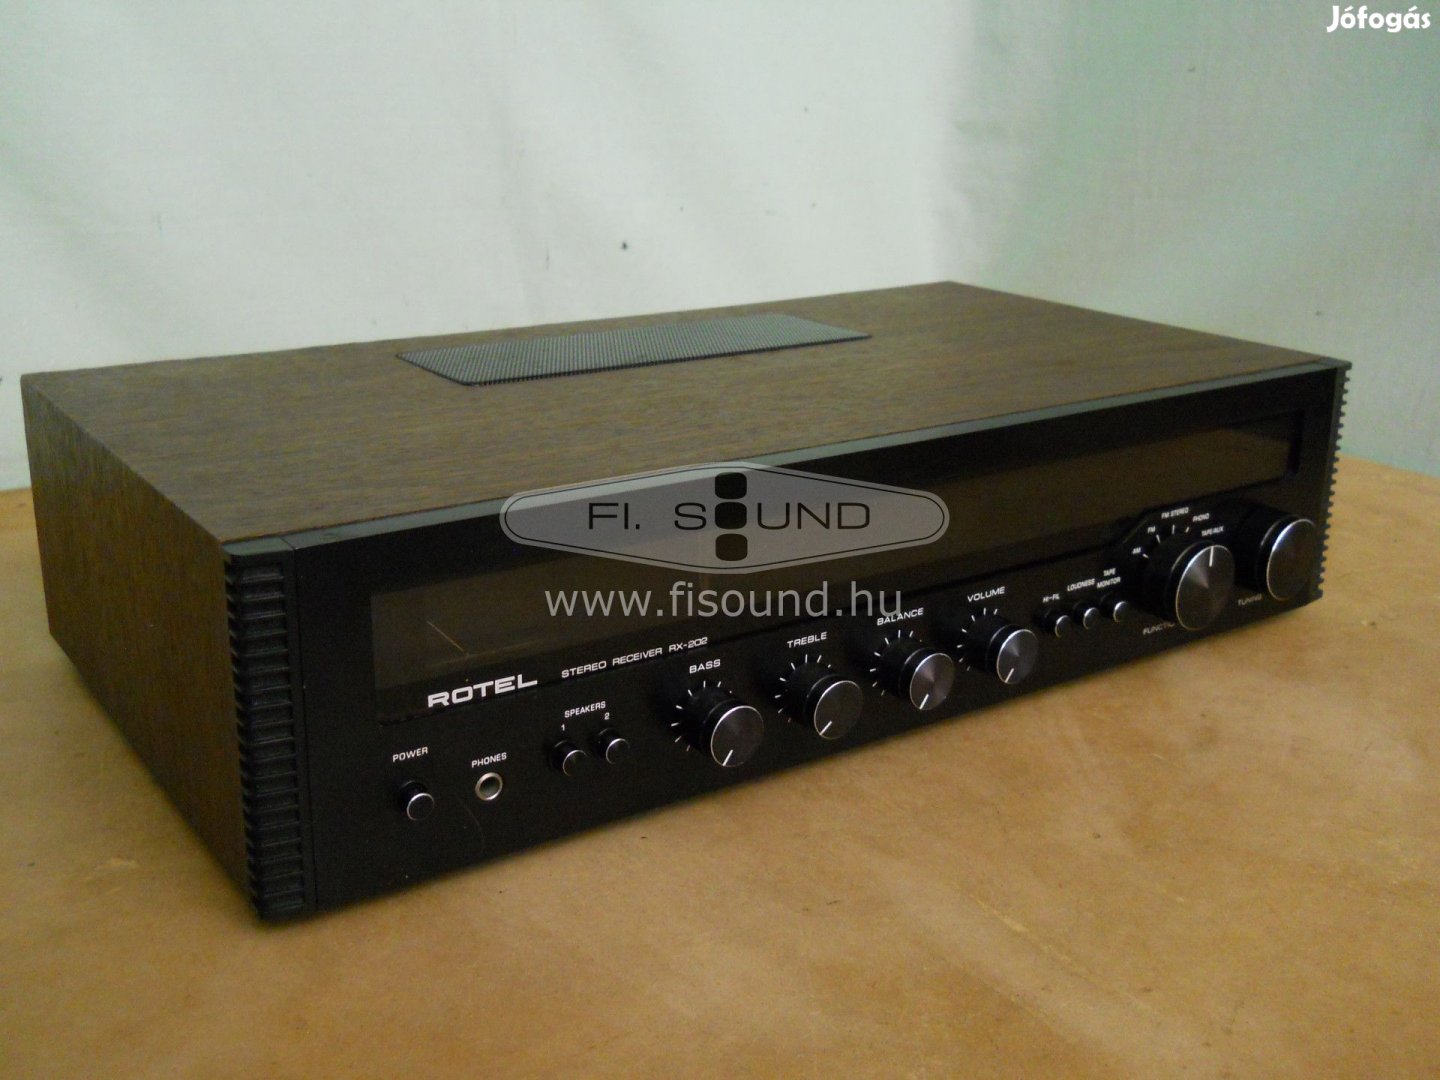 Rotel RX-202 ,115W,4-16ohm,4 hangfalas rádiós sztereo receiver